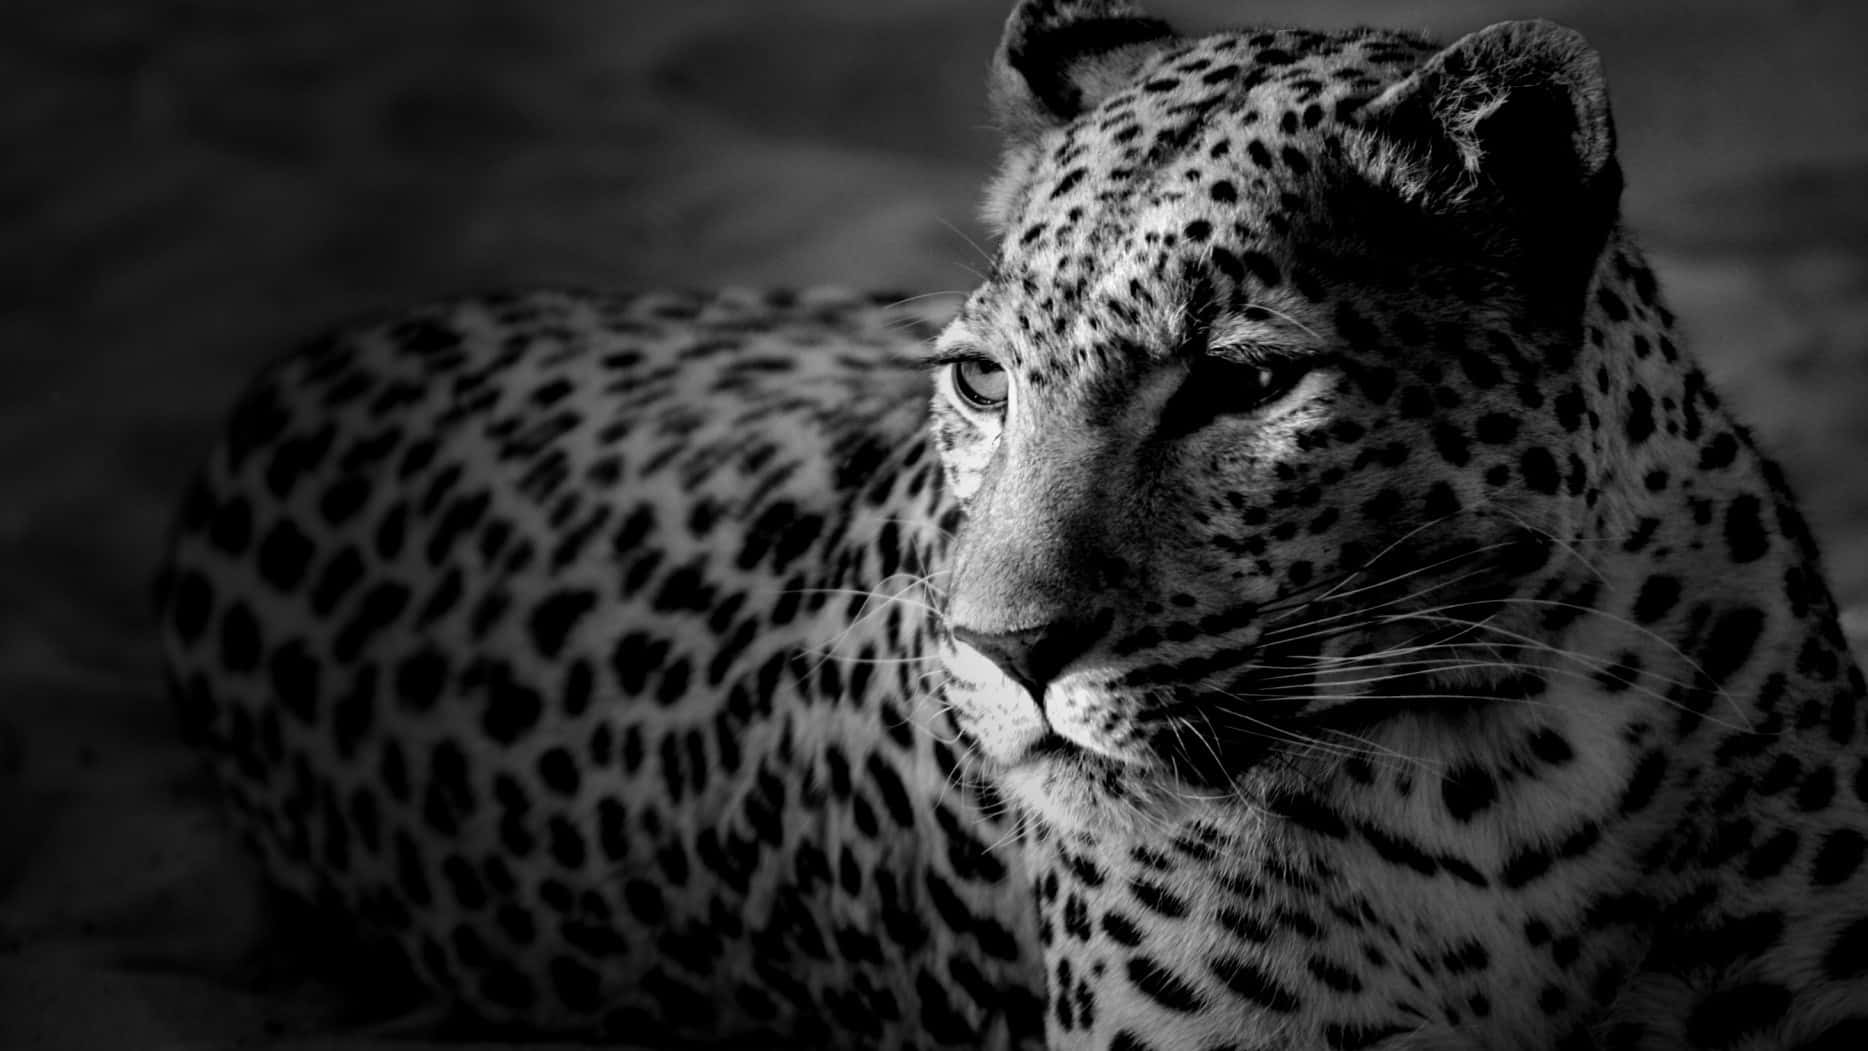 Jaguarvandrar I Sin Naturliga Miljö. Wallpaper